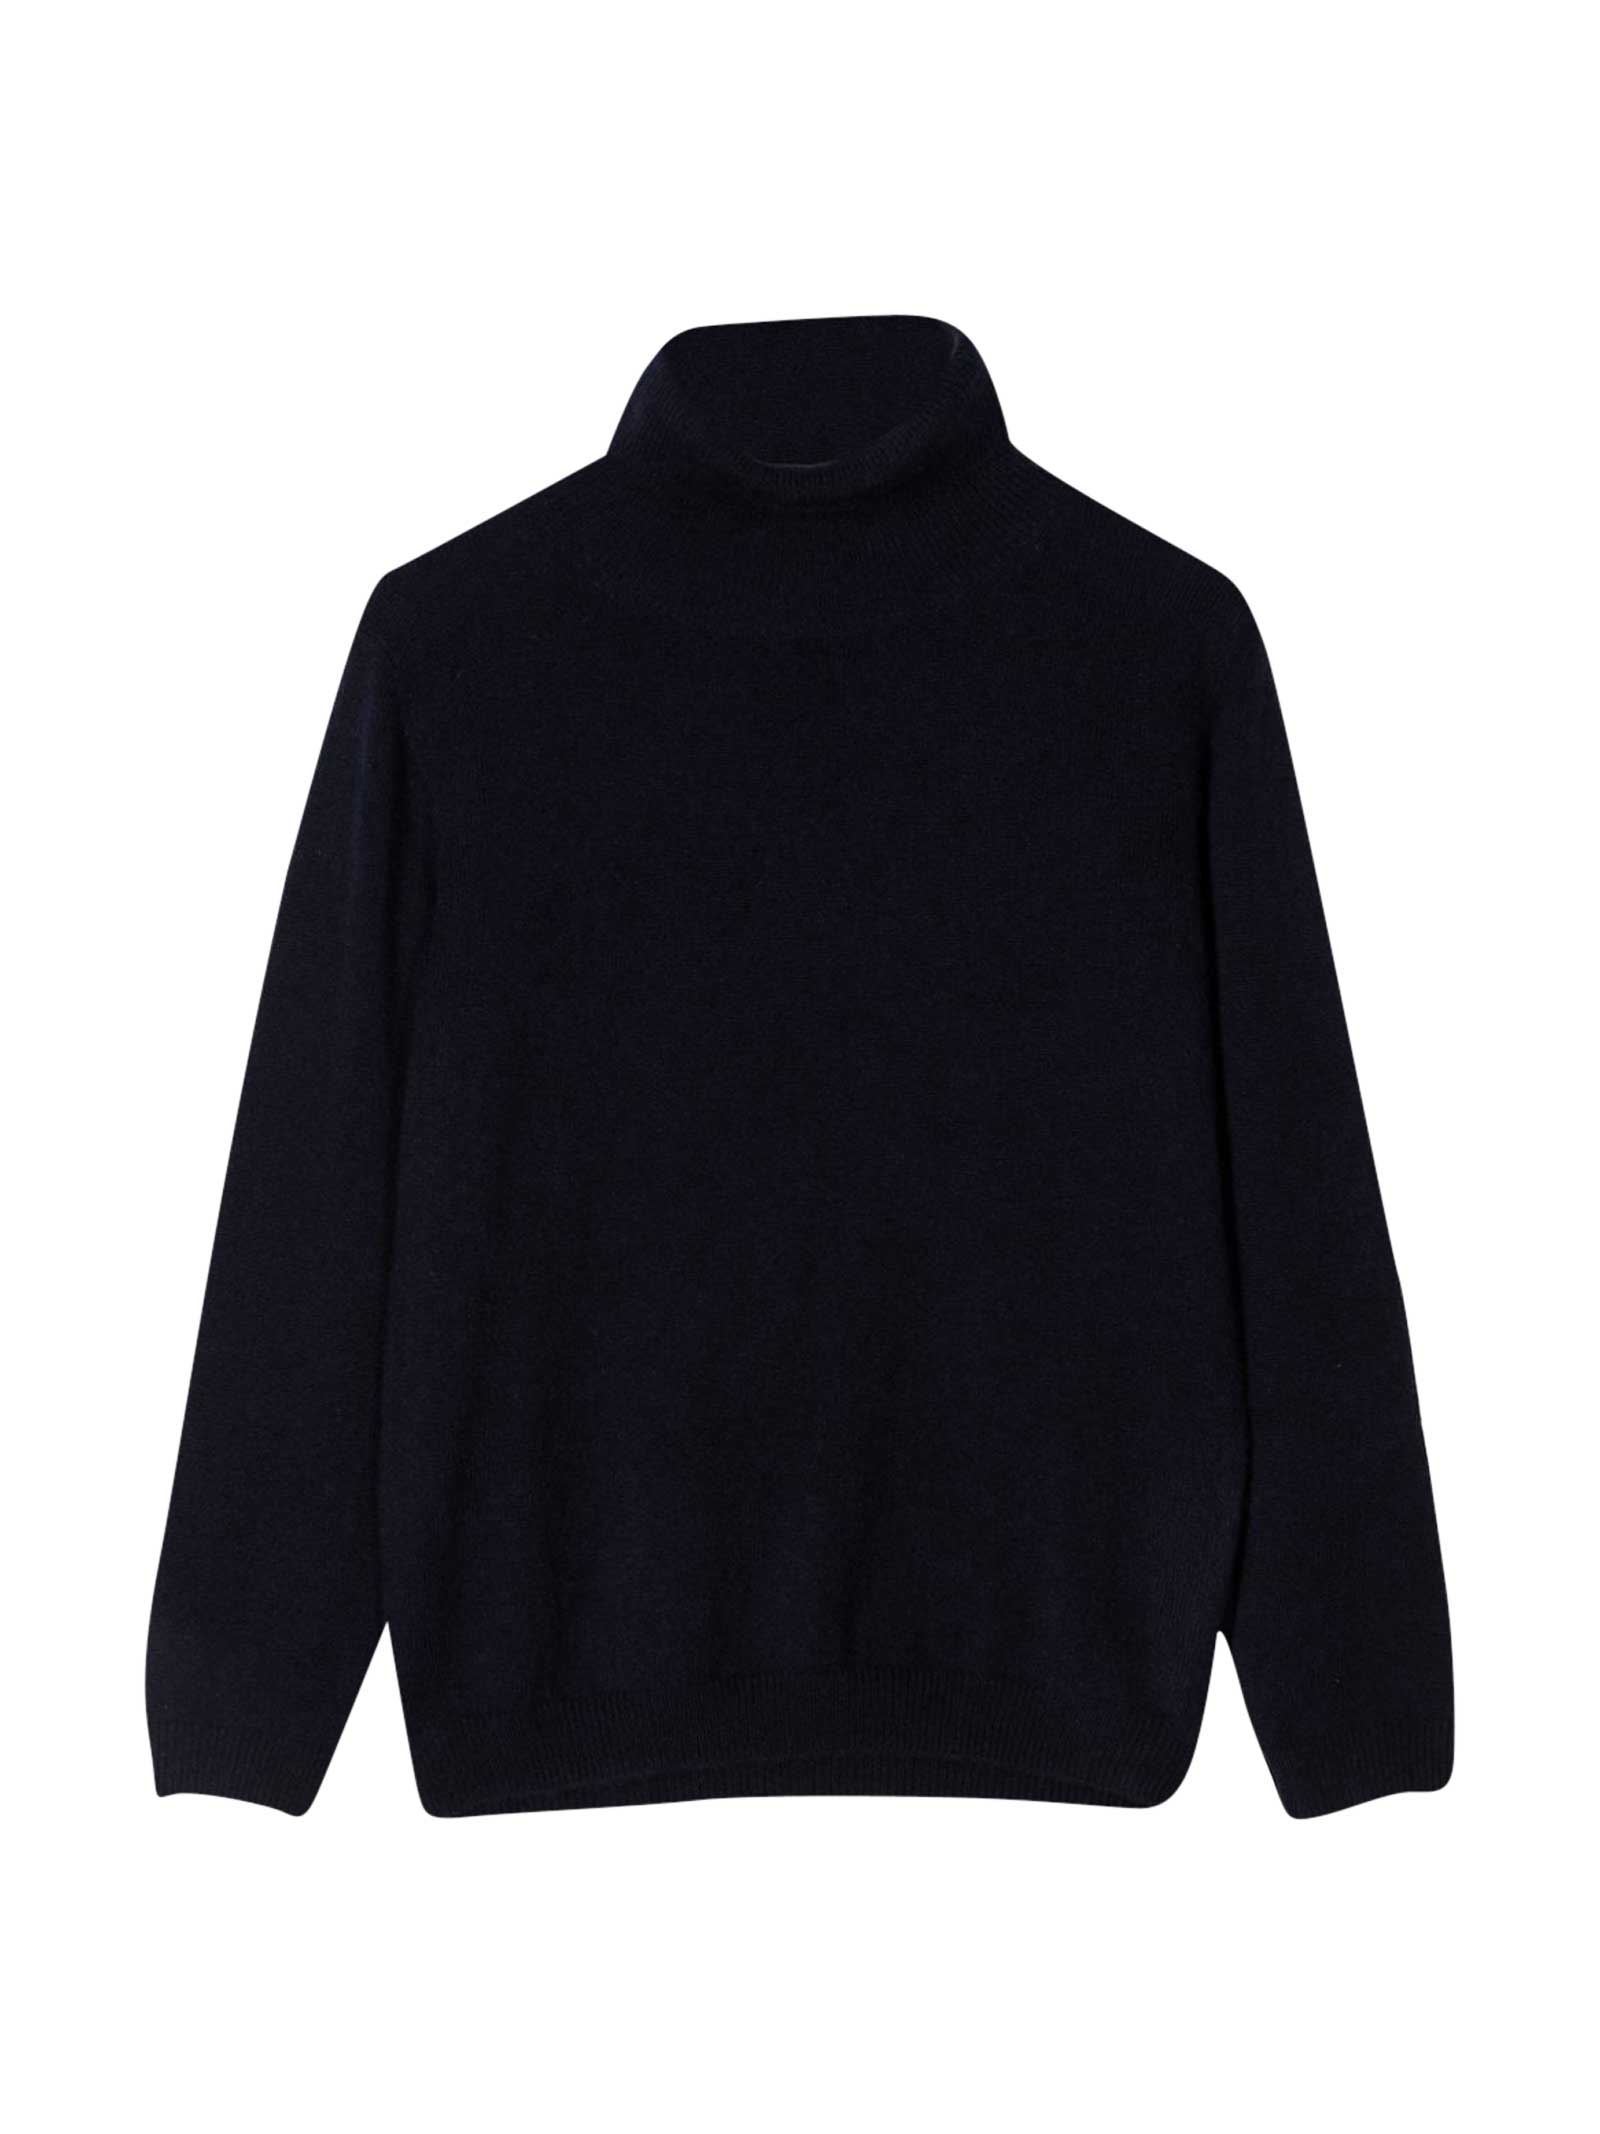 Il Gufo Black Sweater